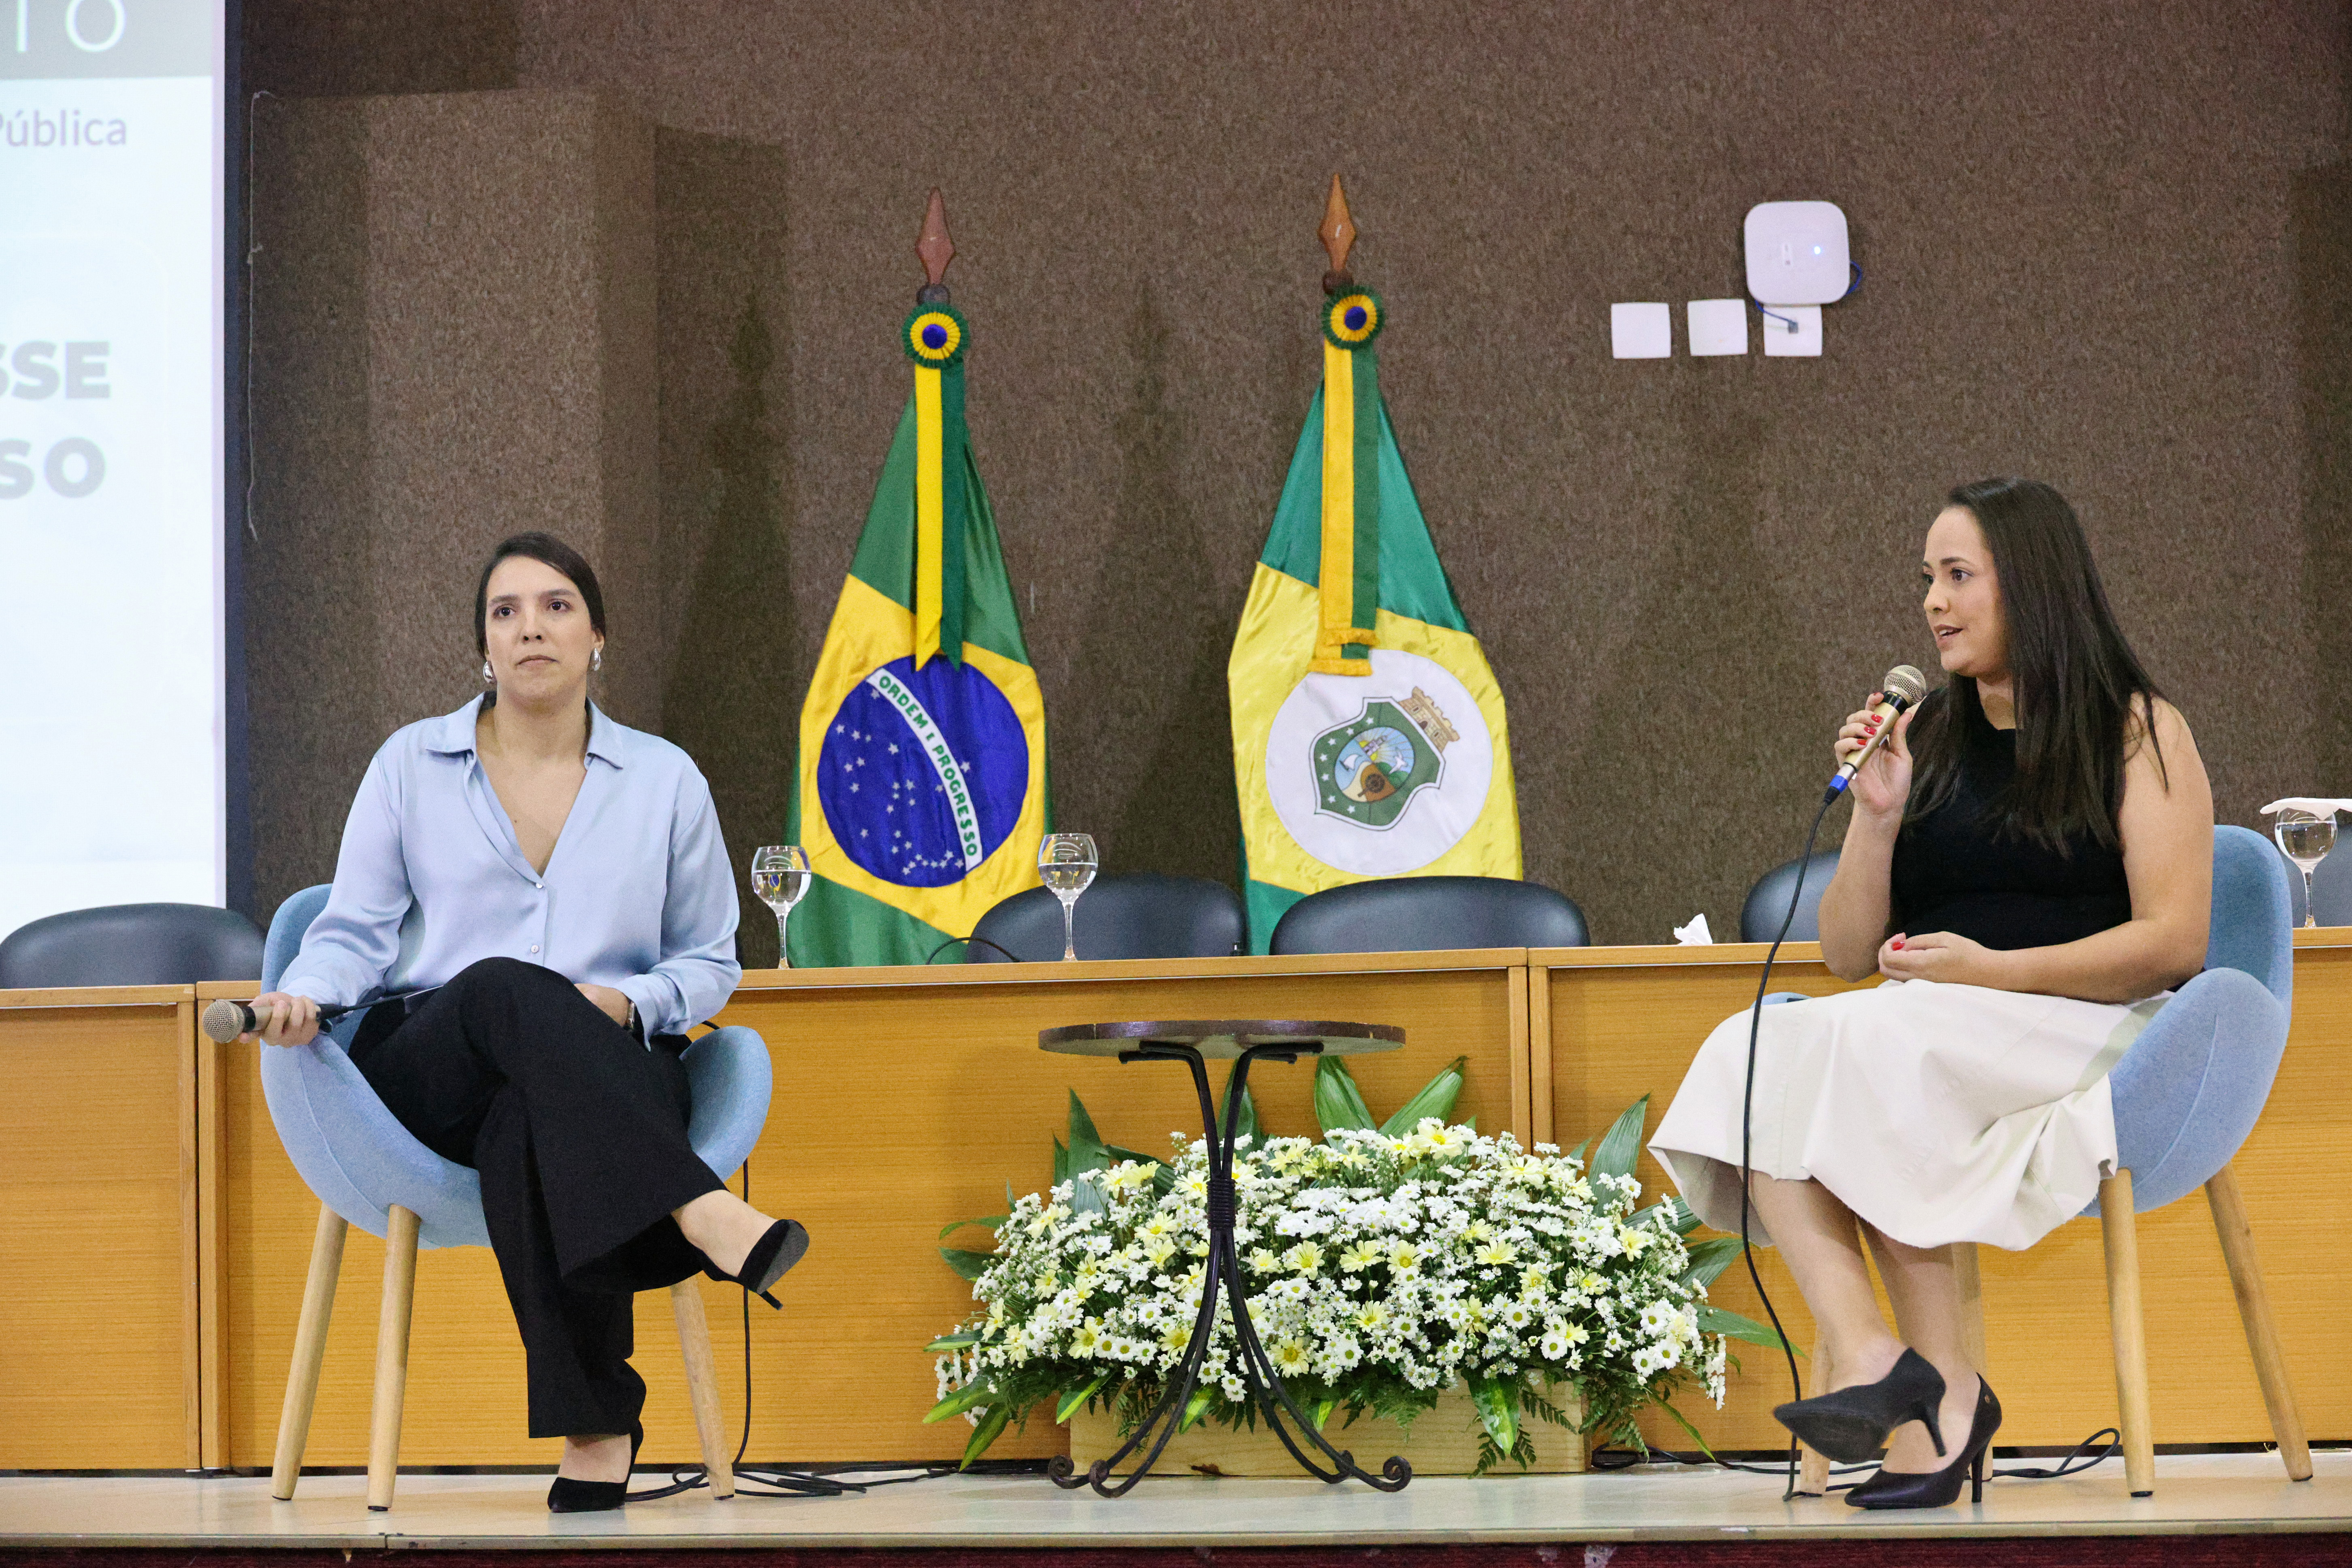 Carla Marinho e Viviane Oliveira apresentam painel sobre a importância das boas práticas ambientais, sociais e de governança